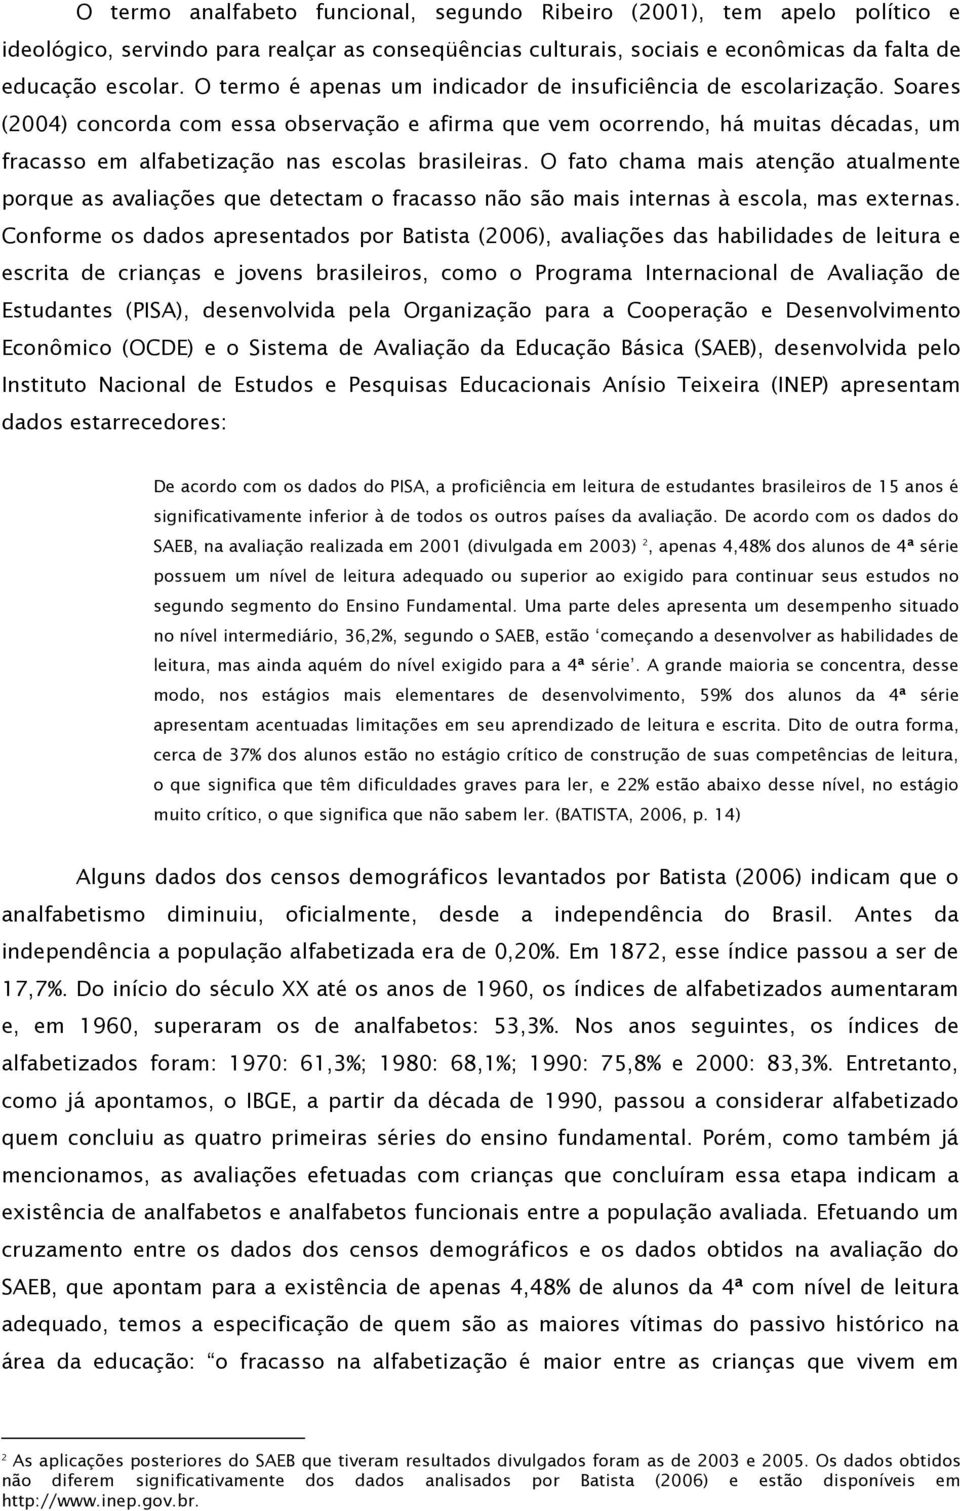 Soares (2004) concorda com essa observação e afirma que vem ocorrendo, há muitas décadas, um fracasso em alfabetização nas escolas brasileiras.